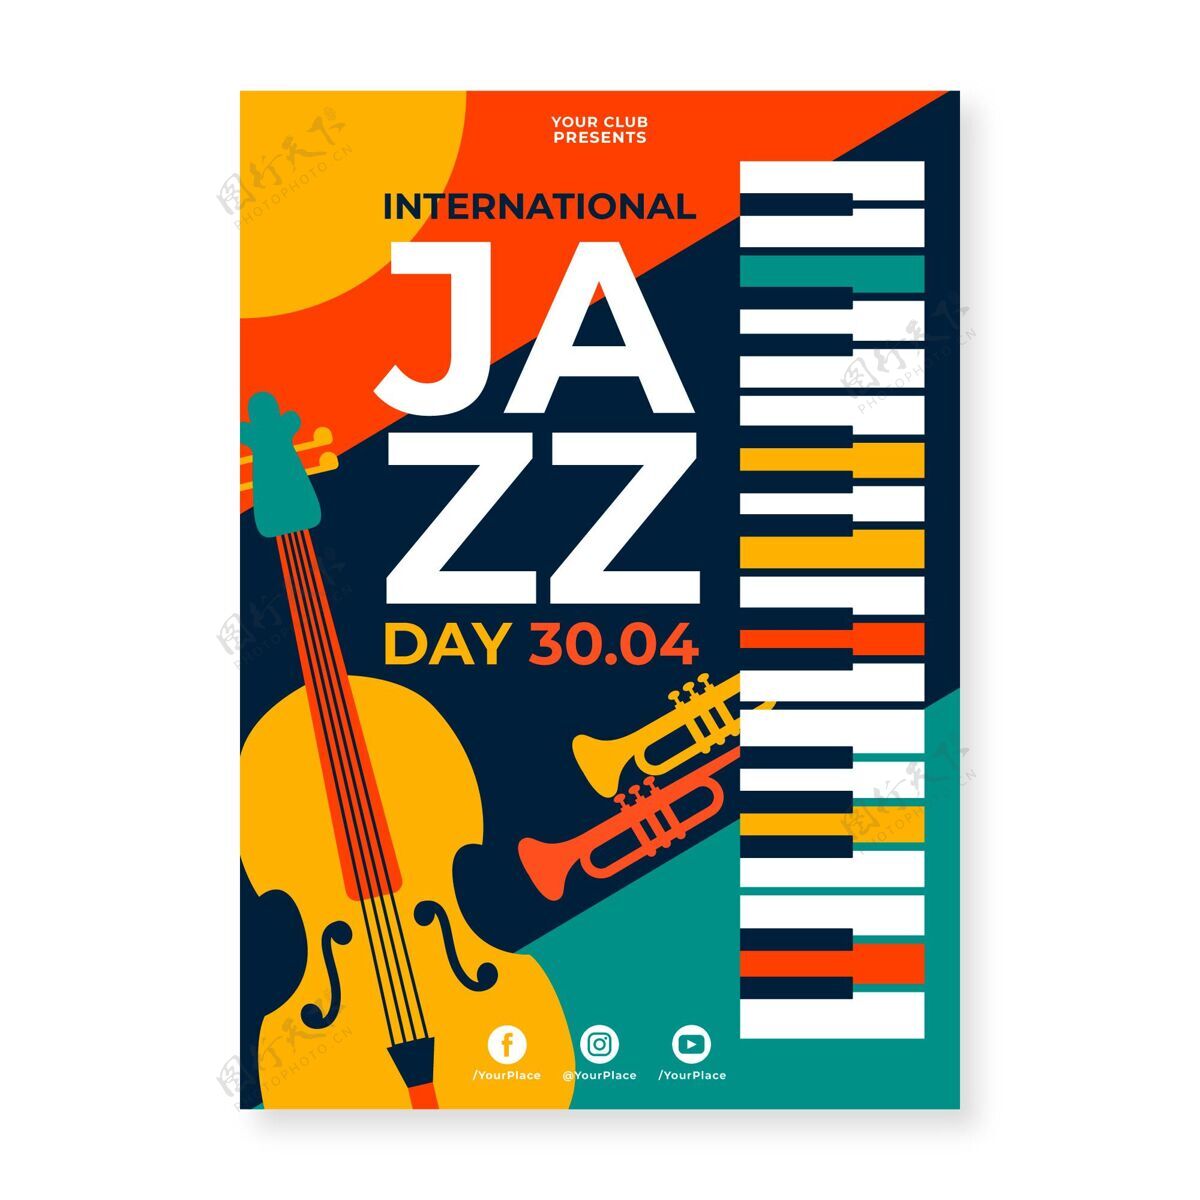 爵士乐日平面国际爵士日海报模板声音国际爵士乐日节日